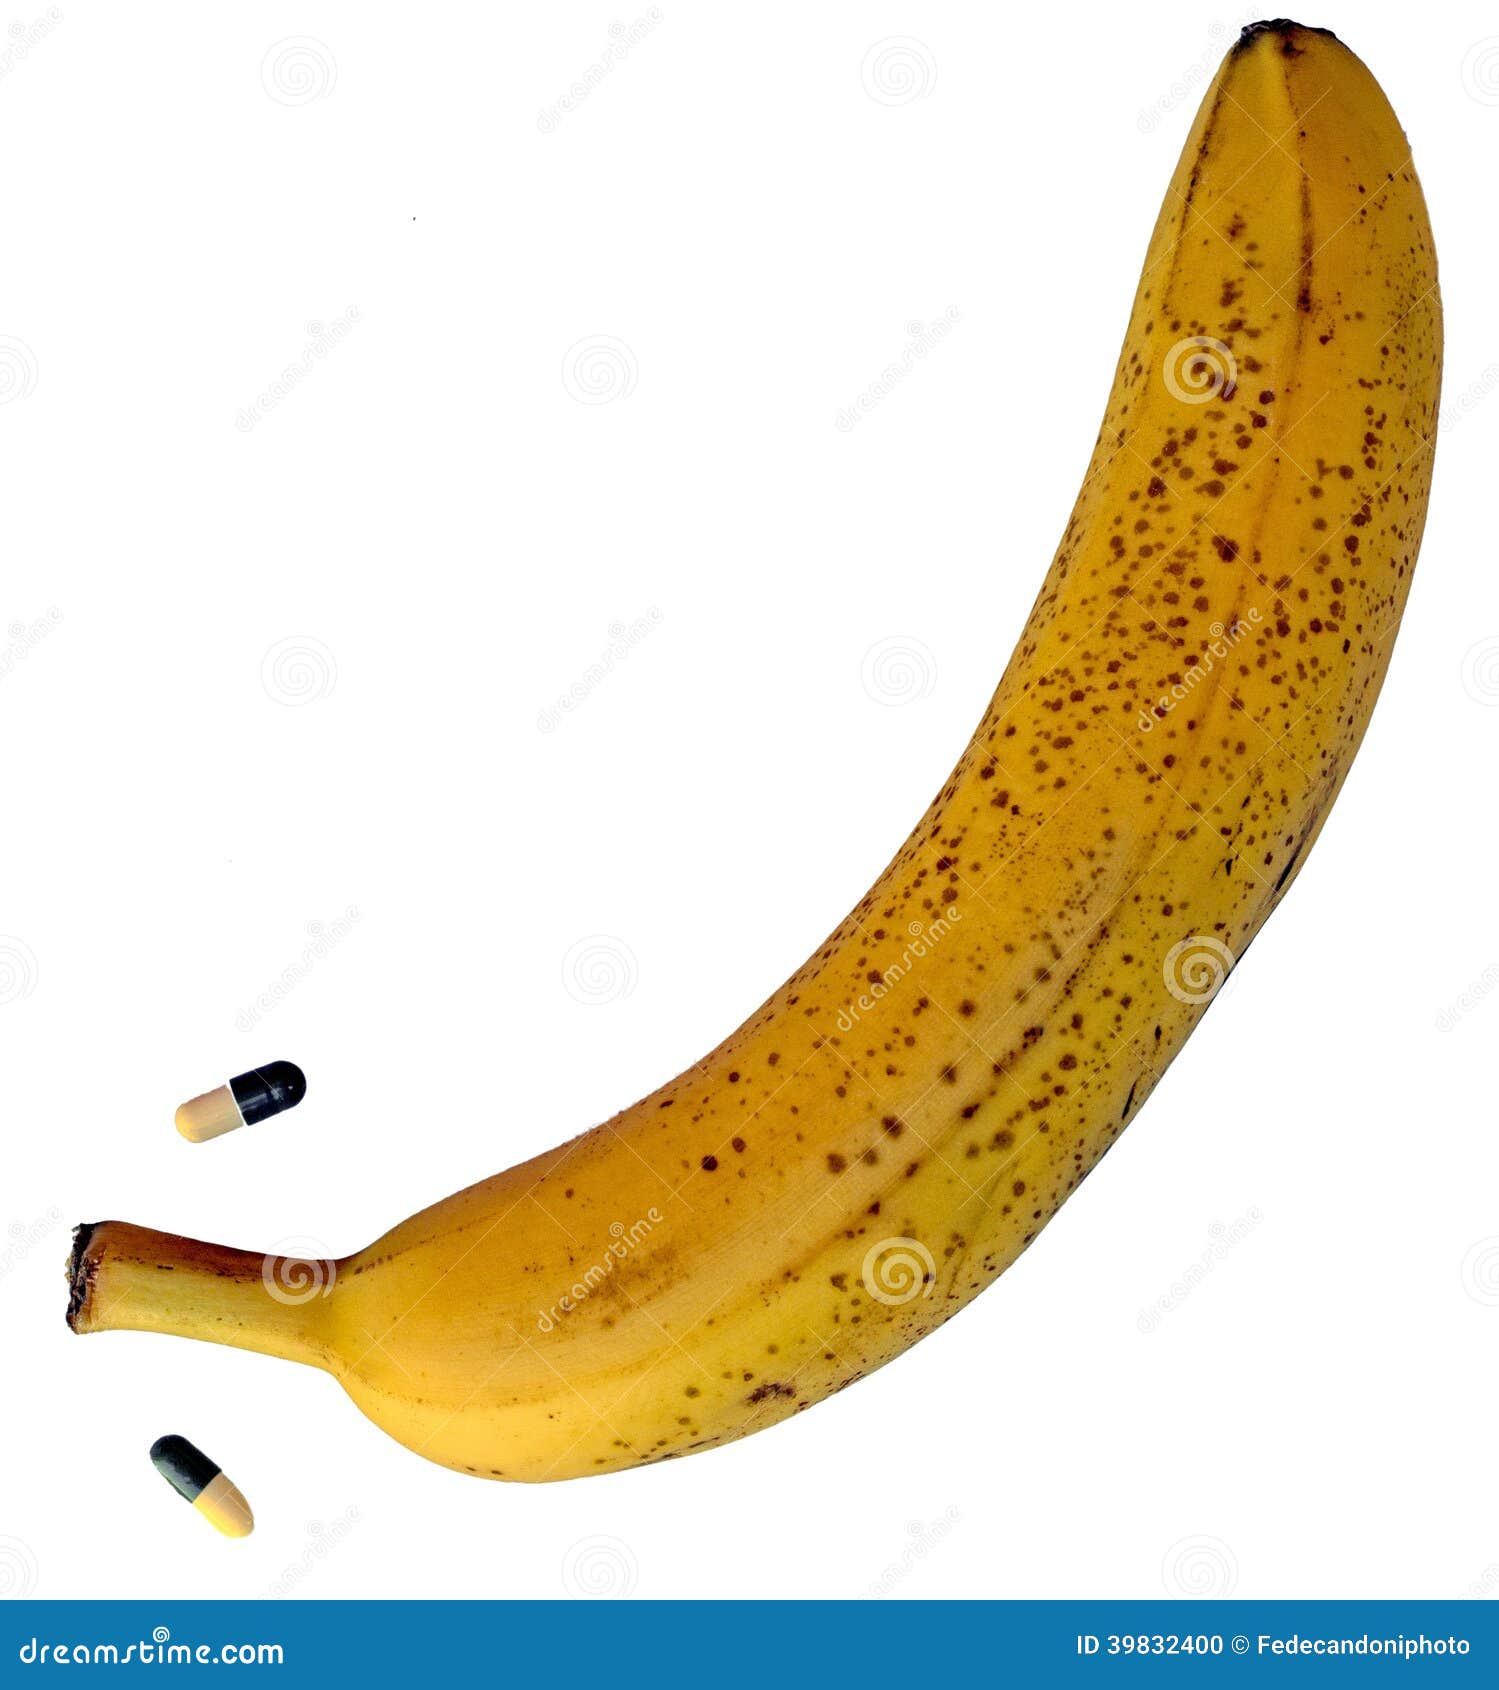 Включи big banana. Биг банана. Огромный банан. Биг банана пенсил. Большой желтый банан.